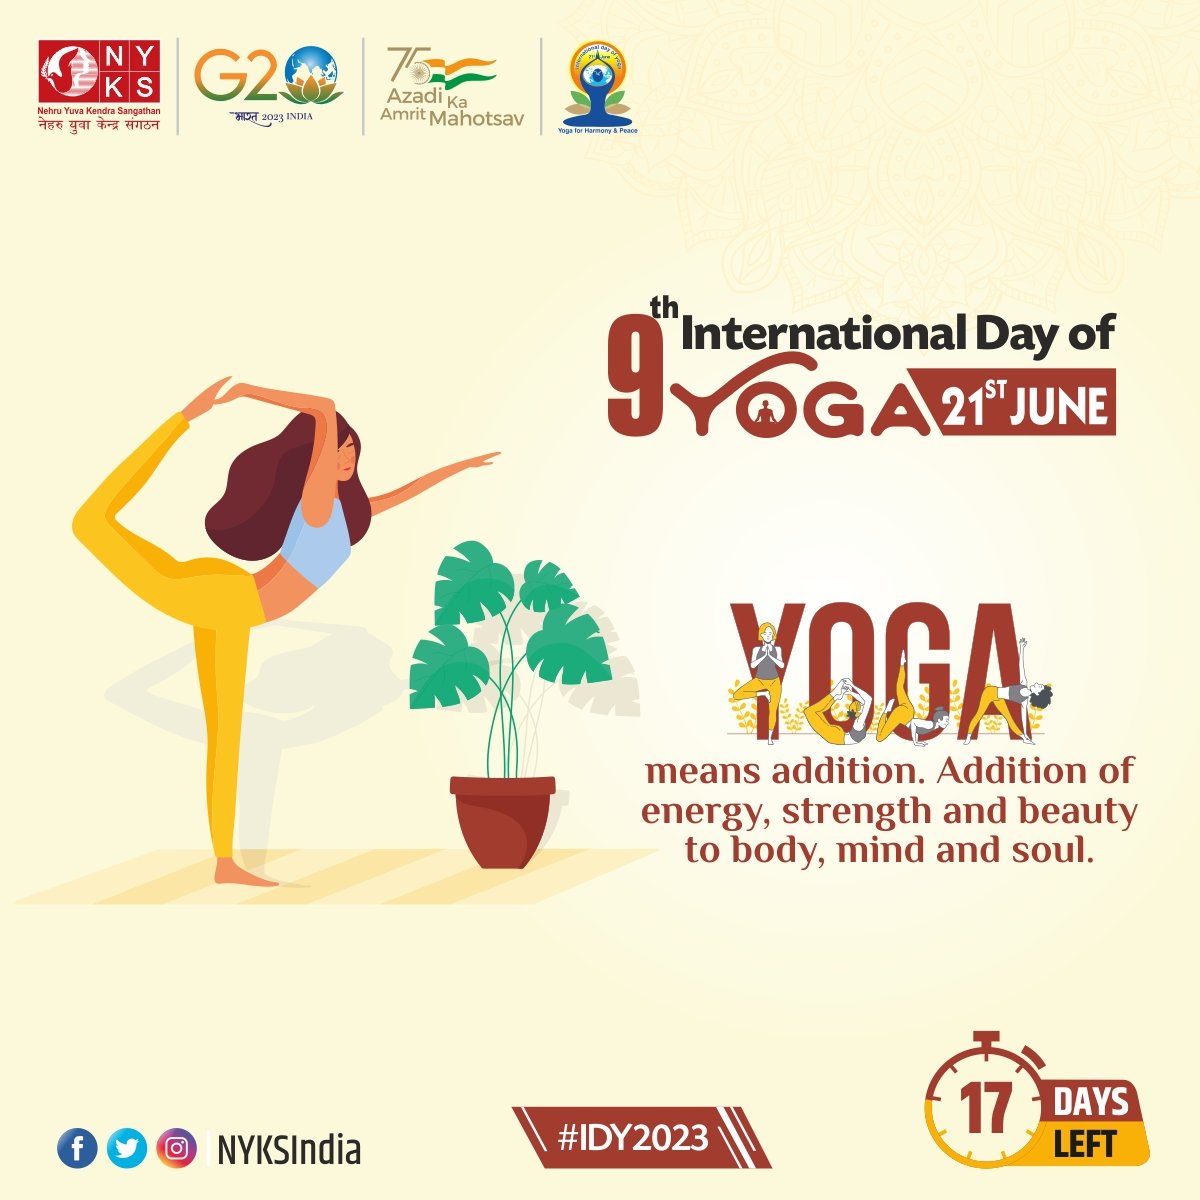 Yoga: A way of making you mentally, spiritually and physically sound! 

#NYKS4Yoga #IDY2023 #Yoga